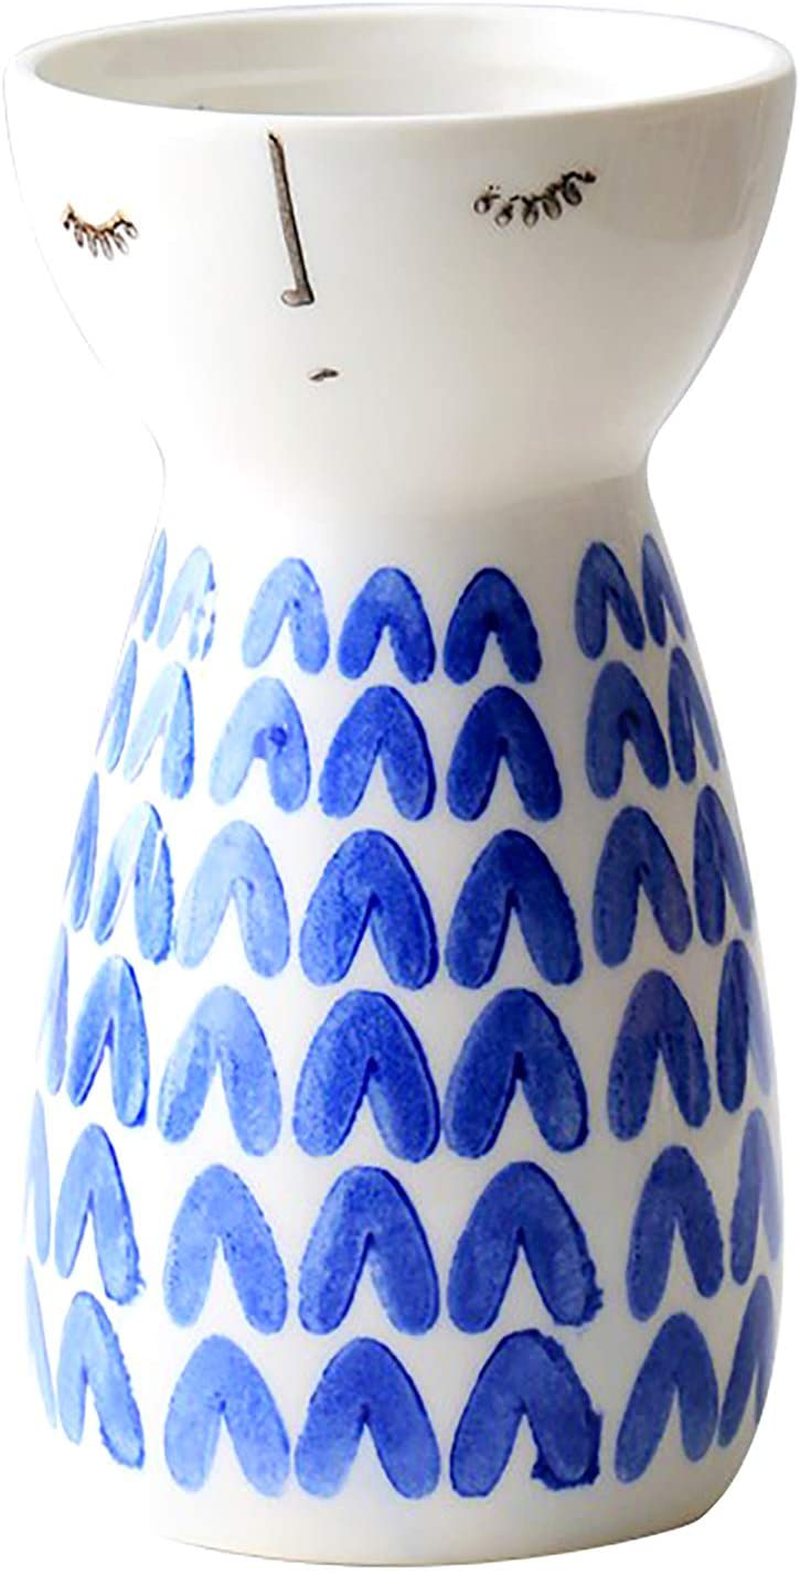 Senliart White Ceramic Vase, Small Flower Vases for Home Décor, 5.9 X 3.2 (Polka Dot) Home & Garden > Decor > Vases Senliart Heart  